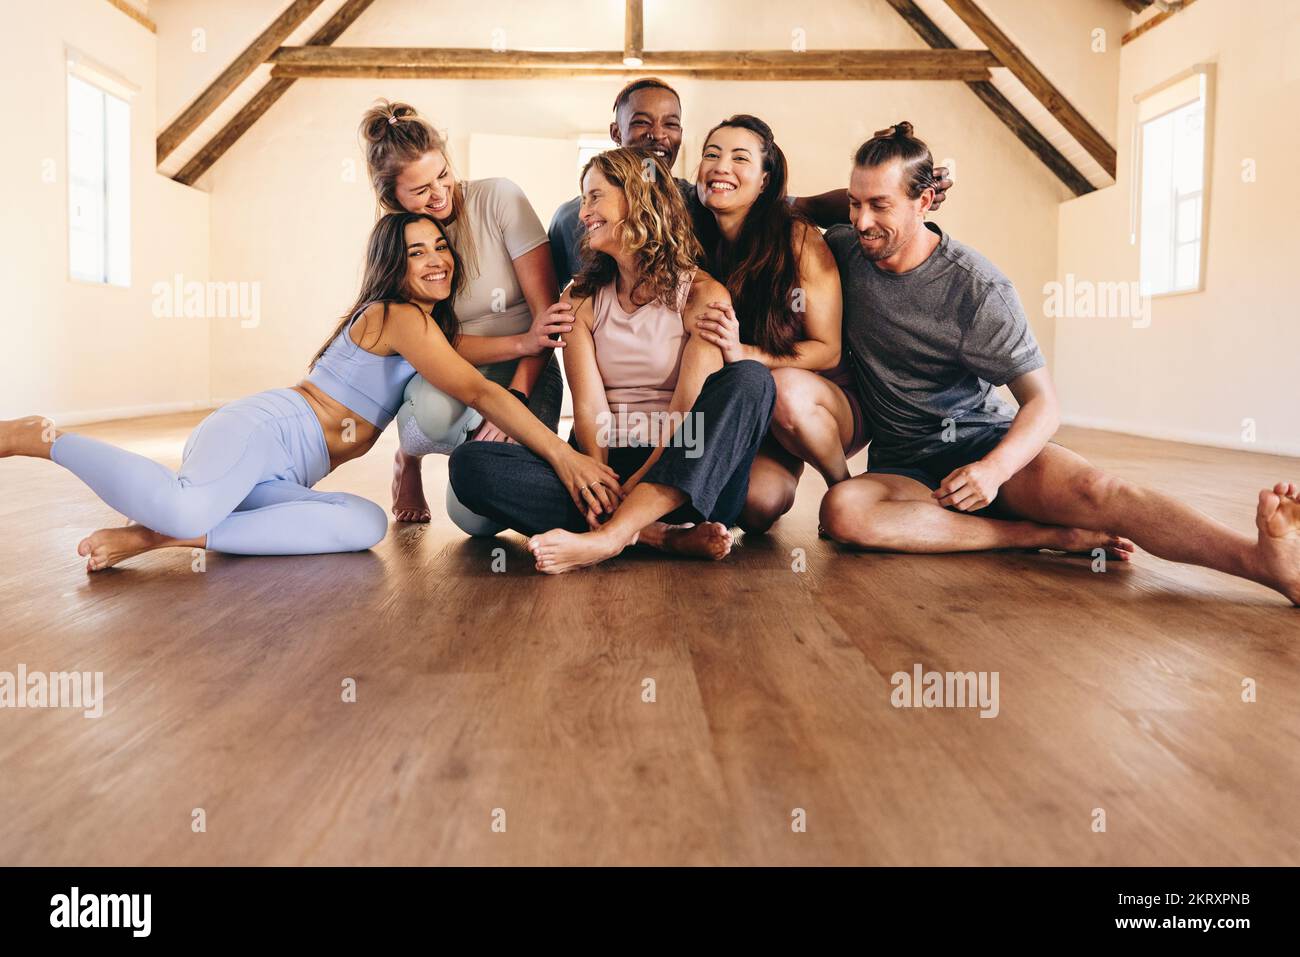 Die Leute lachen zusammen, während sie in einem Yoga-Studio auf dem Boden saßen. Glückliche Fitness-Freunde, die eine Pause von einer Yoga-Session machen. Gruppe mit unterschiedlichen Personen Stockfoto